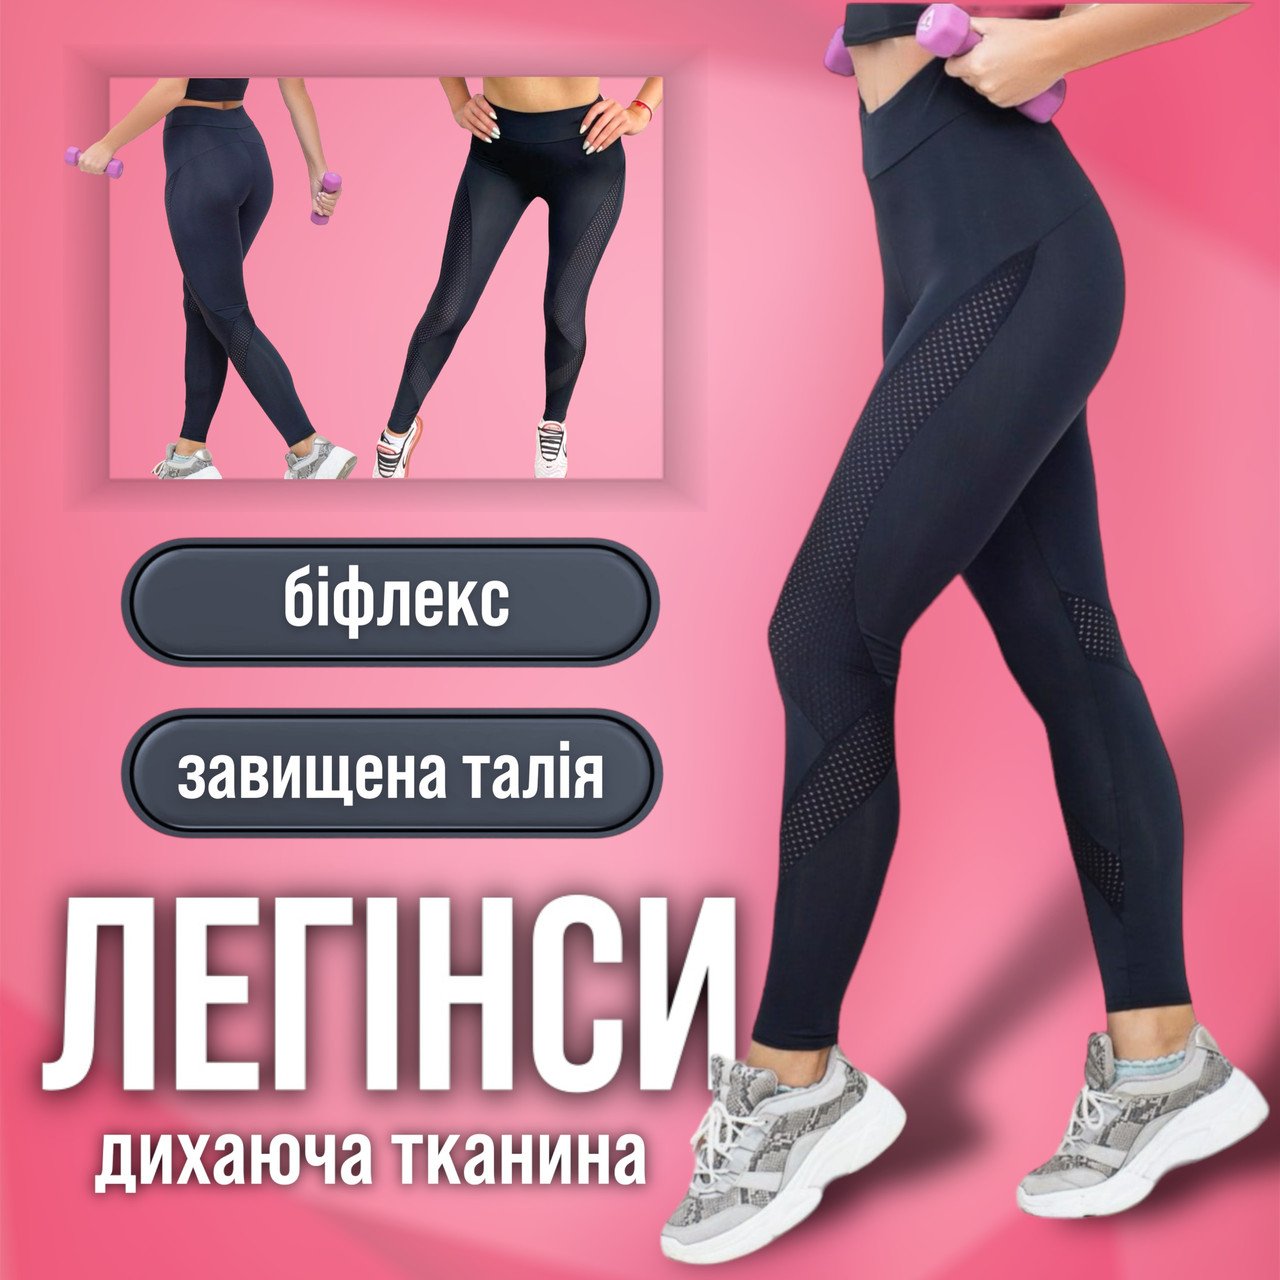 Жіночі лосини для фітнесу спорту тренувань та йоги спортивні фітнес легінси в спортзал iFitYou в сіточку S